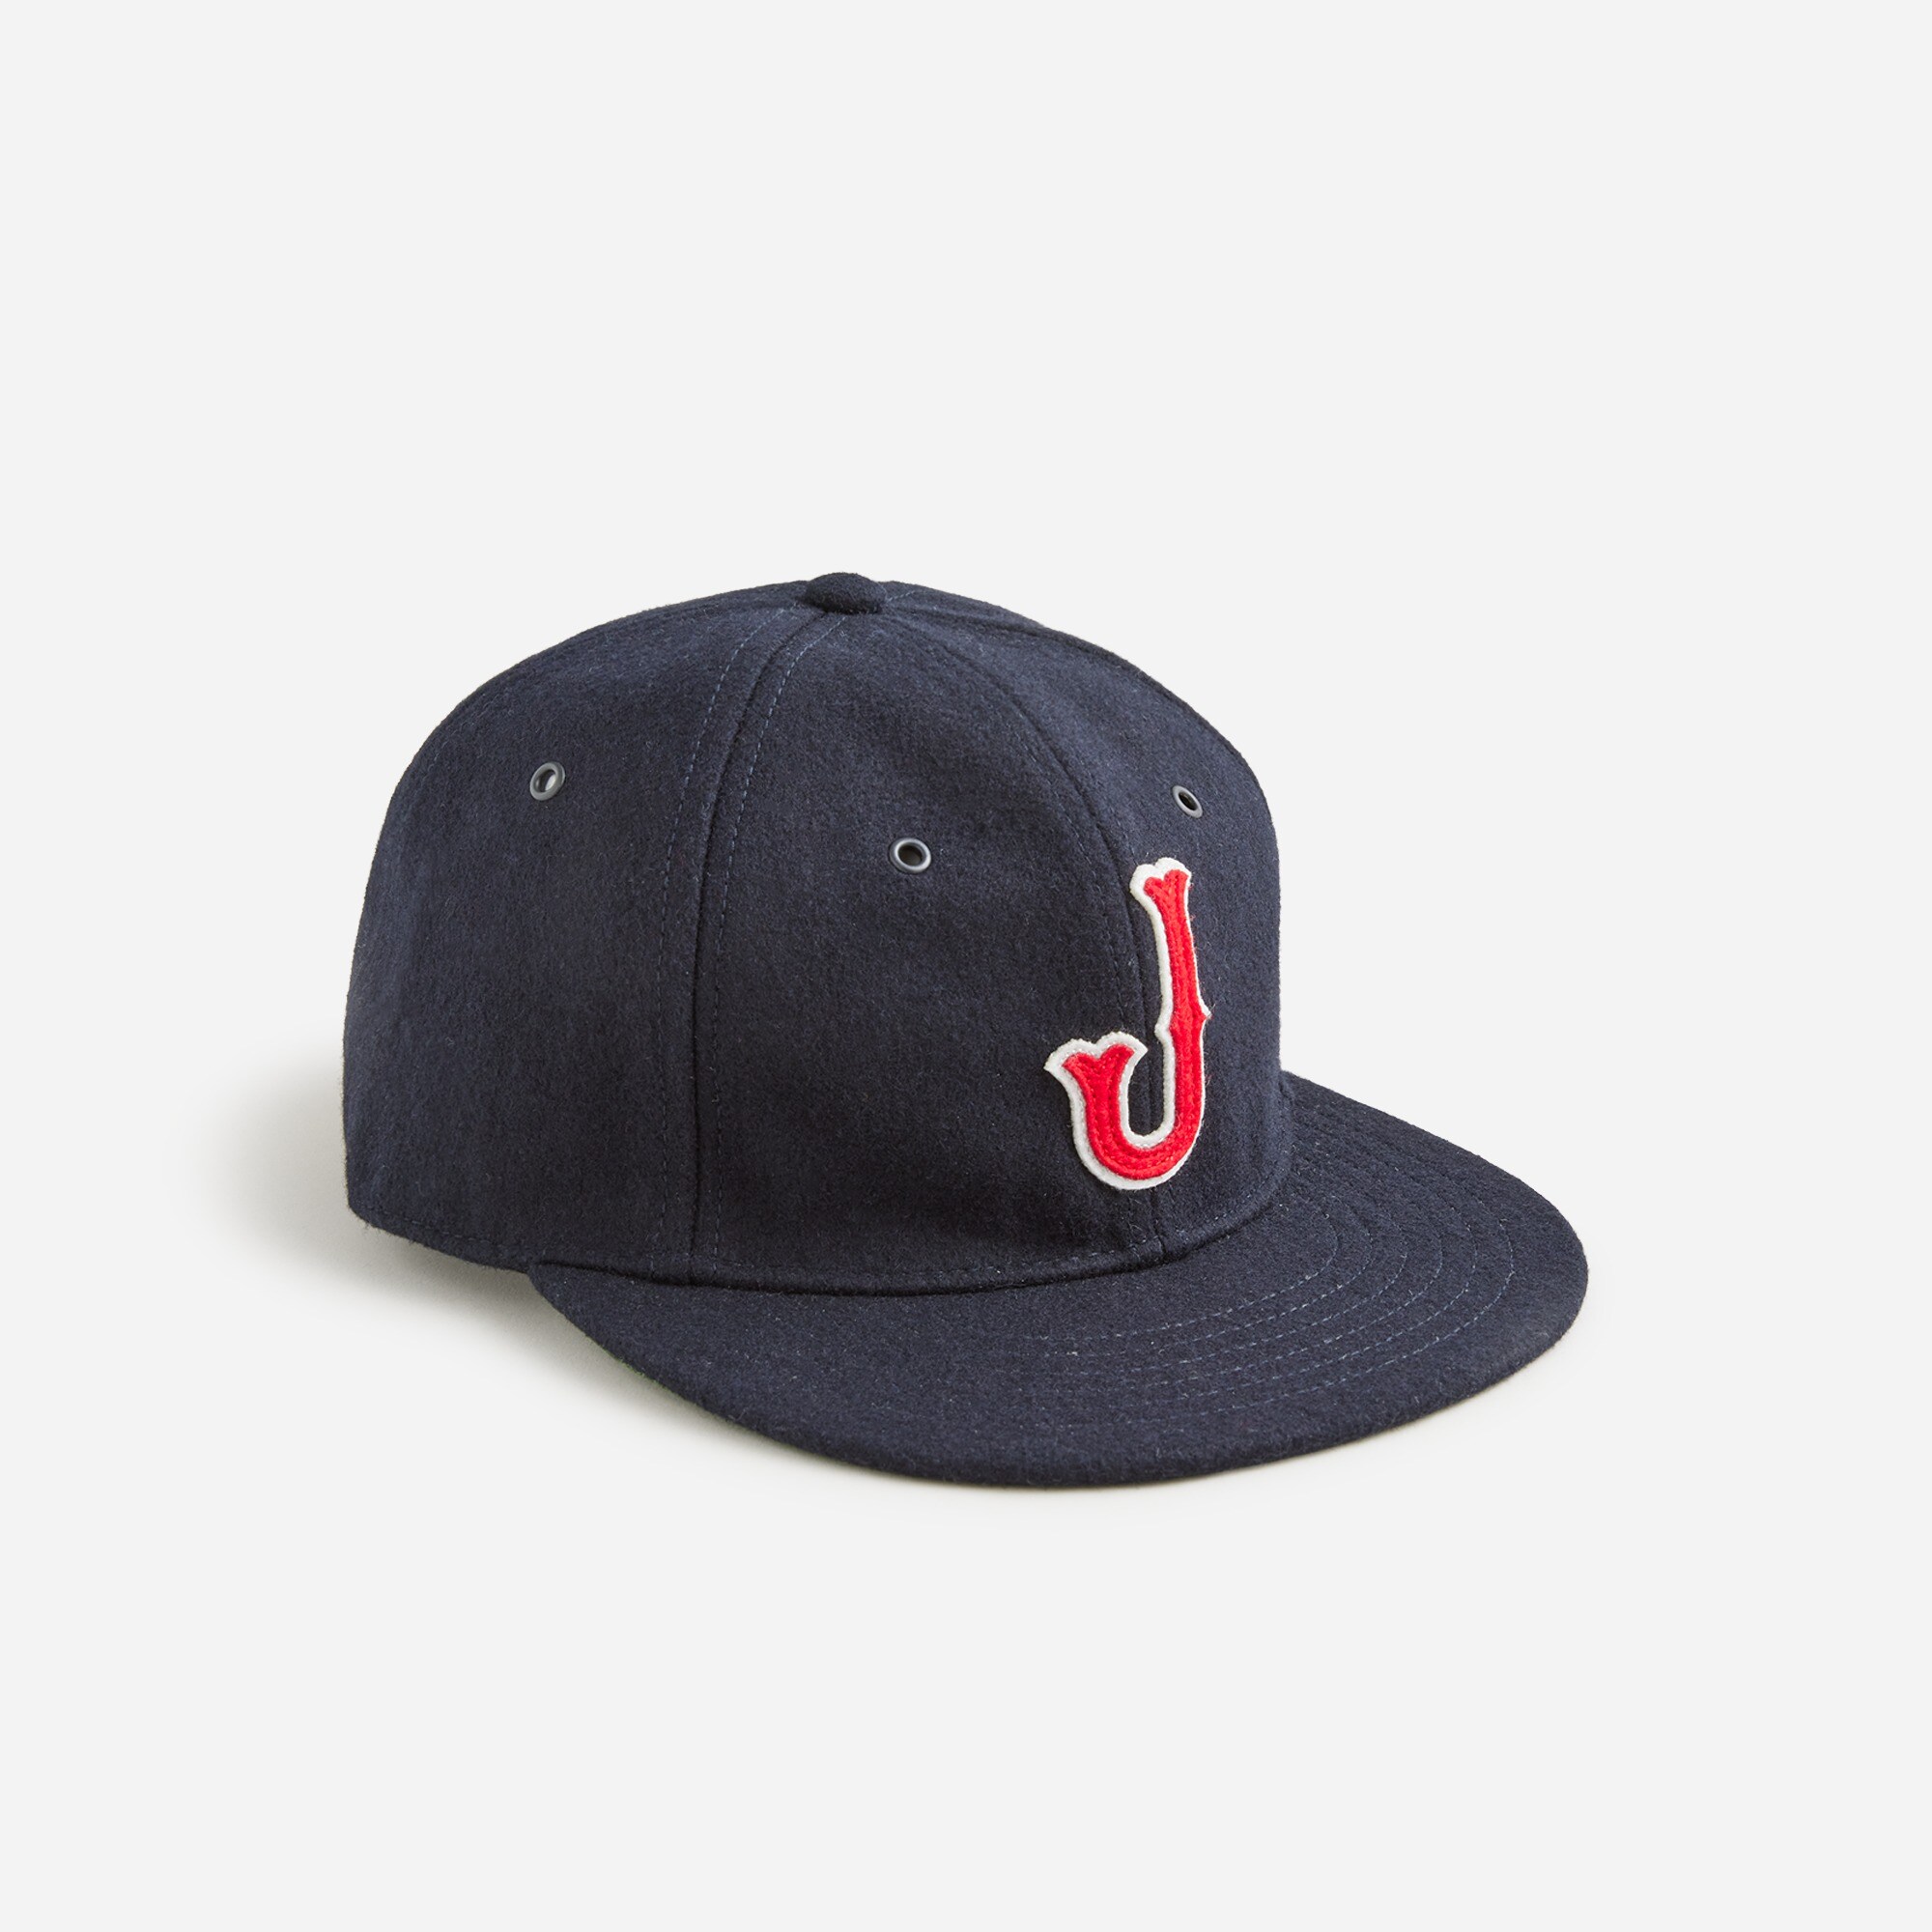 J.Crew: Heritage Wool-blend Letterman Baseball Cap For Men